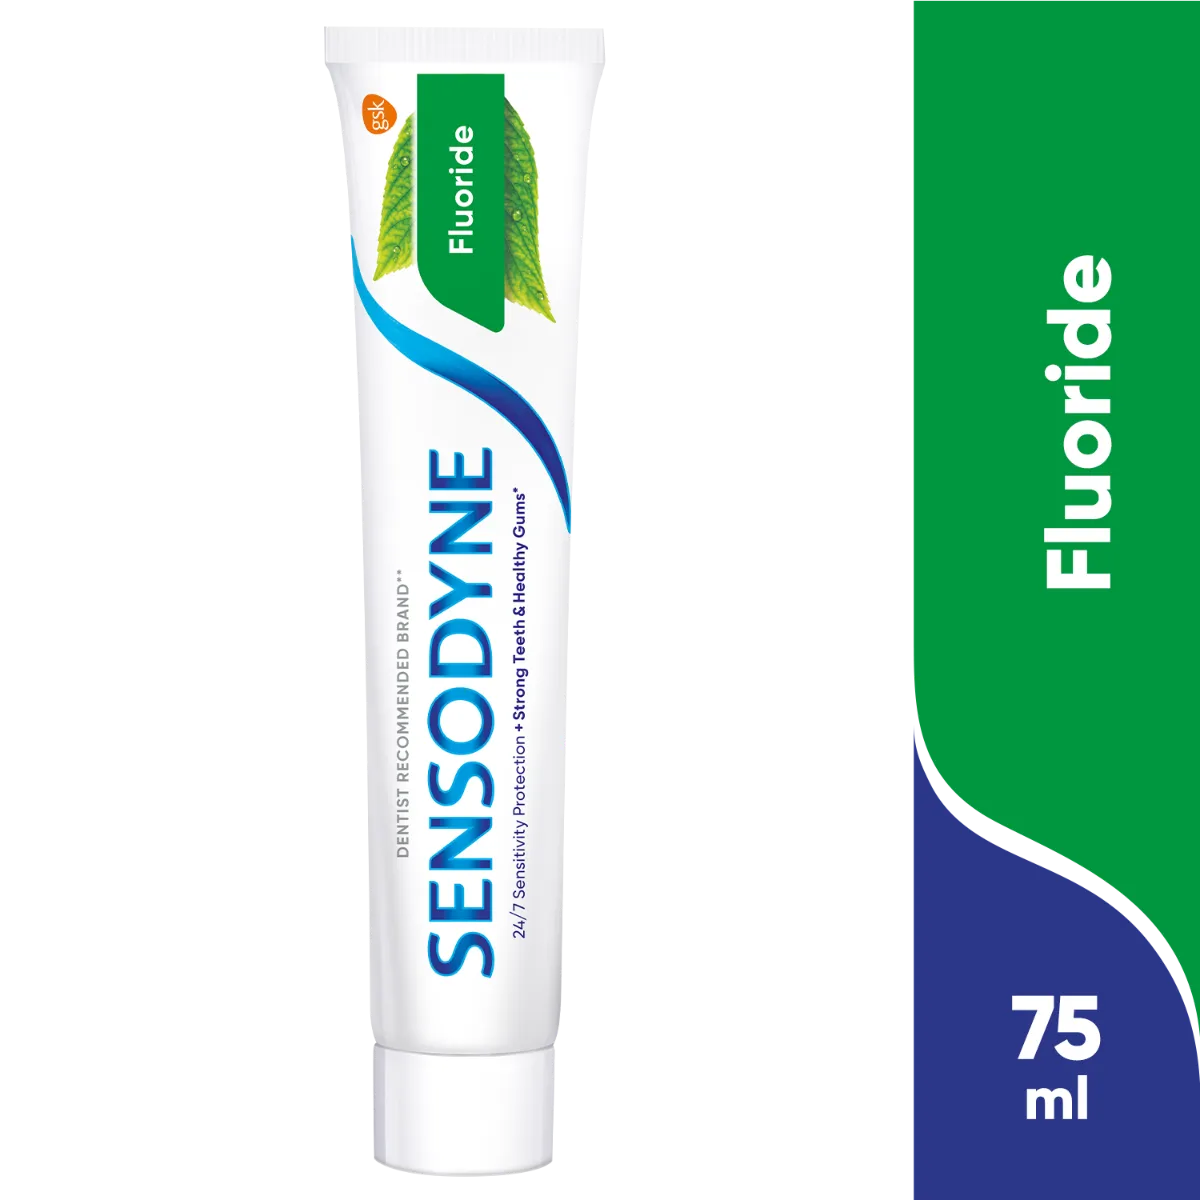 Sensodyne Fluoride, pasta do zębów z fluorkiem, 75 ml